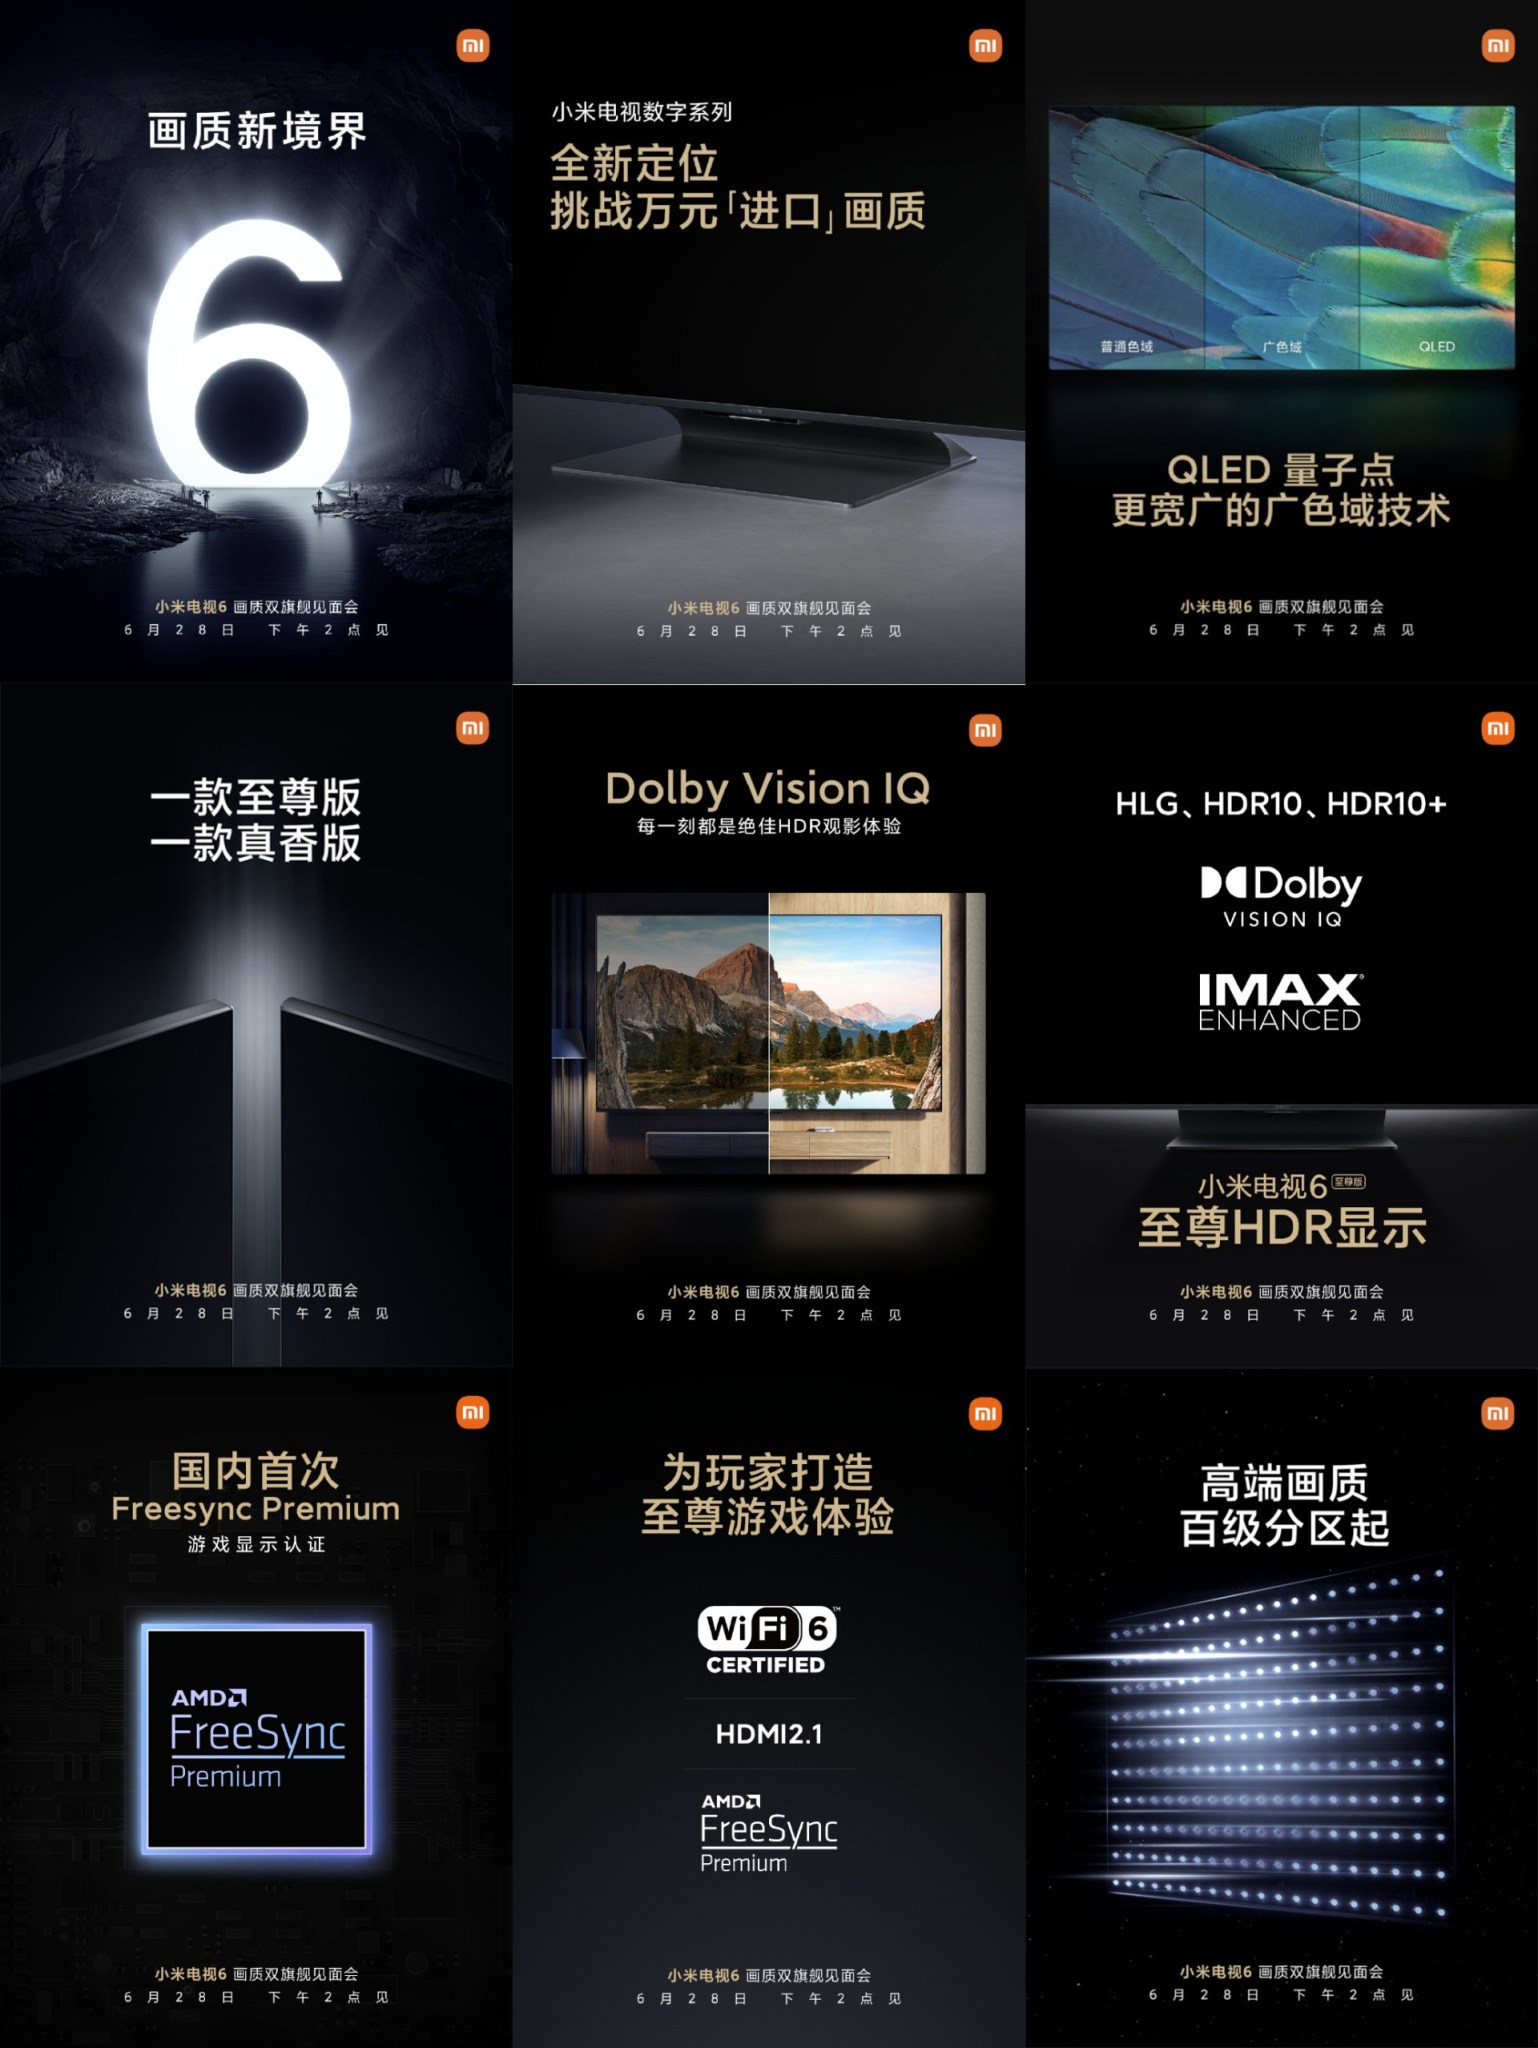 Xiaomi Mi TV 6